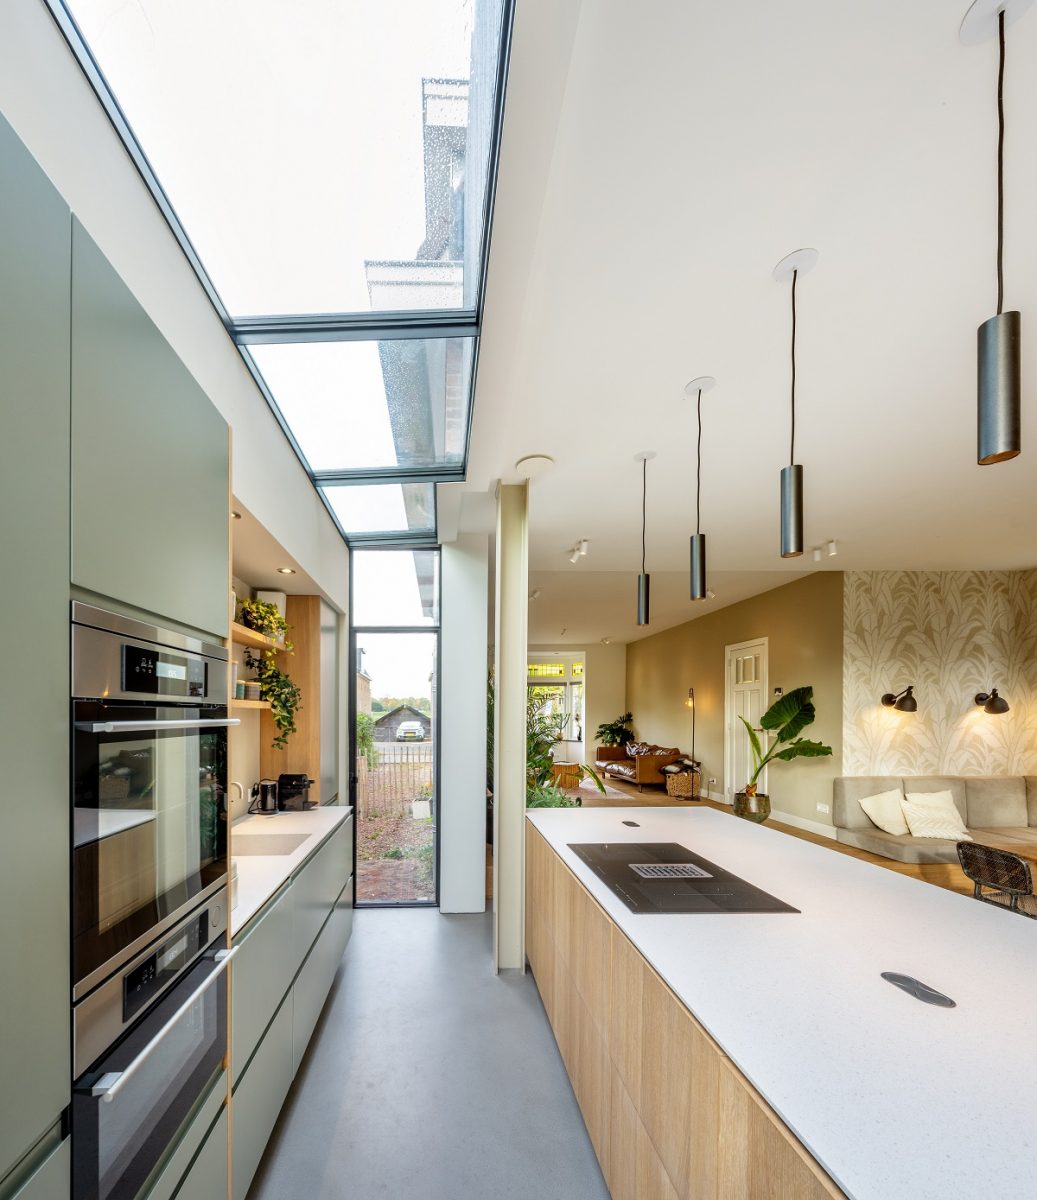 Interiér moderní kuchyně s vysokými stropy a střešními okny, skrz která prosvítá denní světlo. Na levé straně je vestavěná kuchyňská linka v odstínech šedé s vestavěnými spotřebiči. 